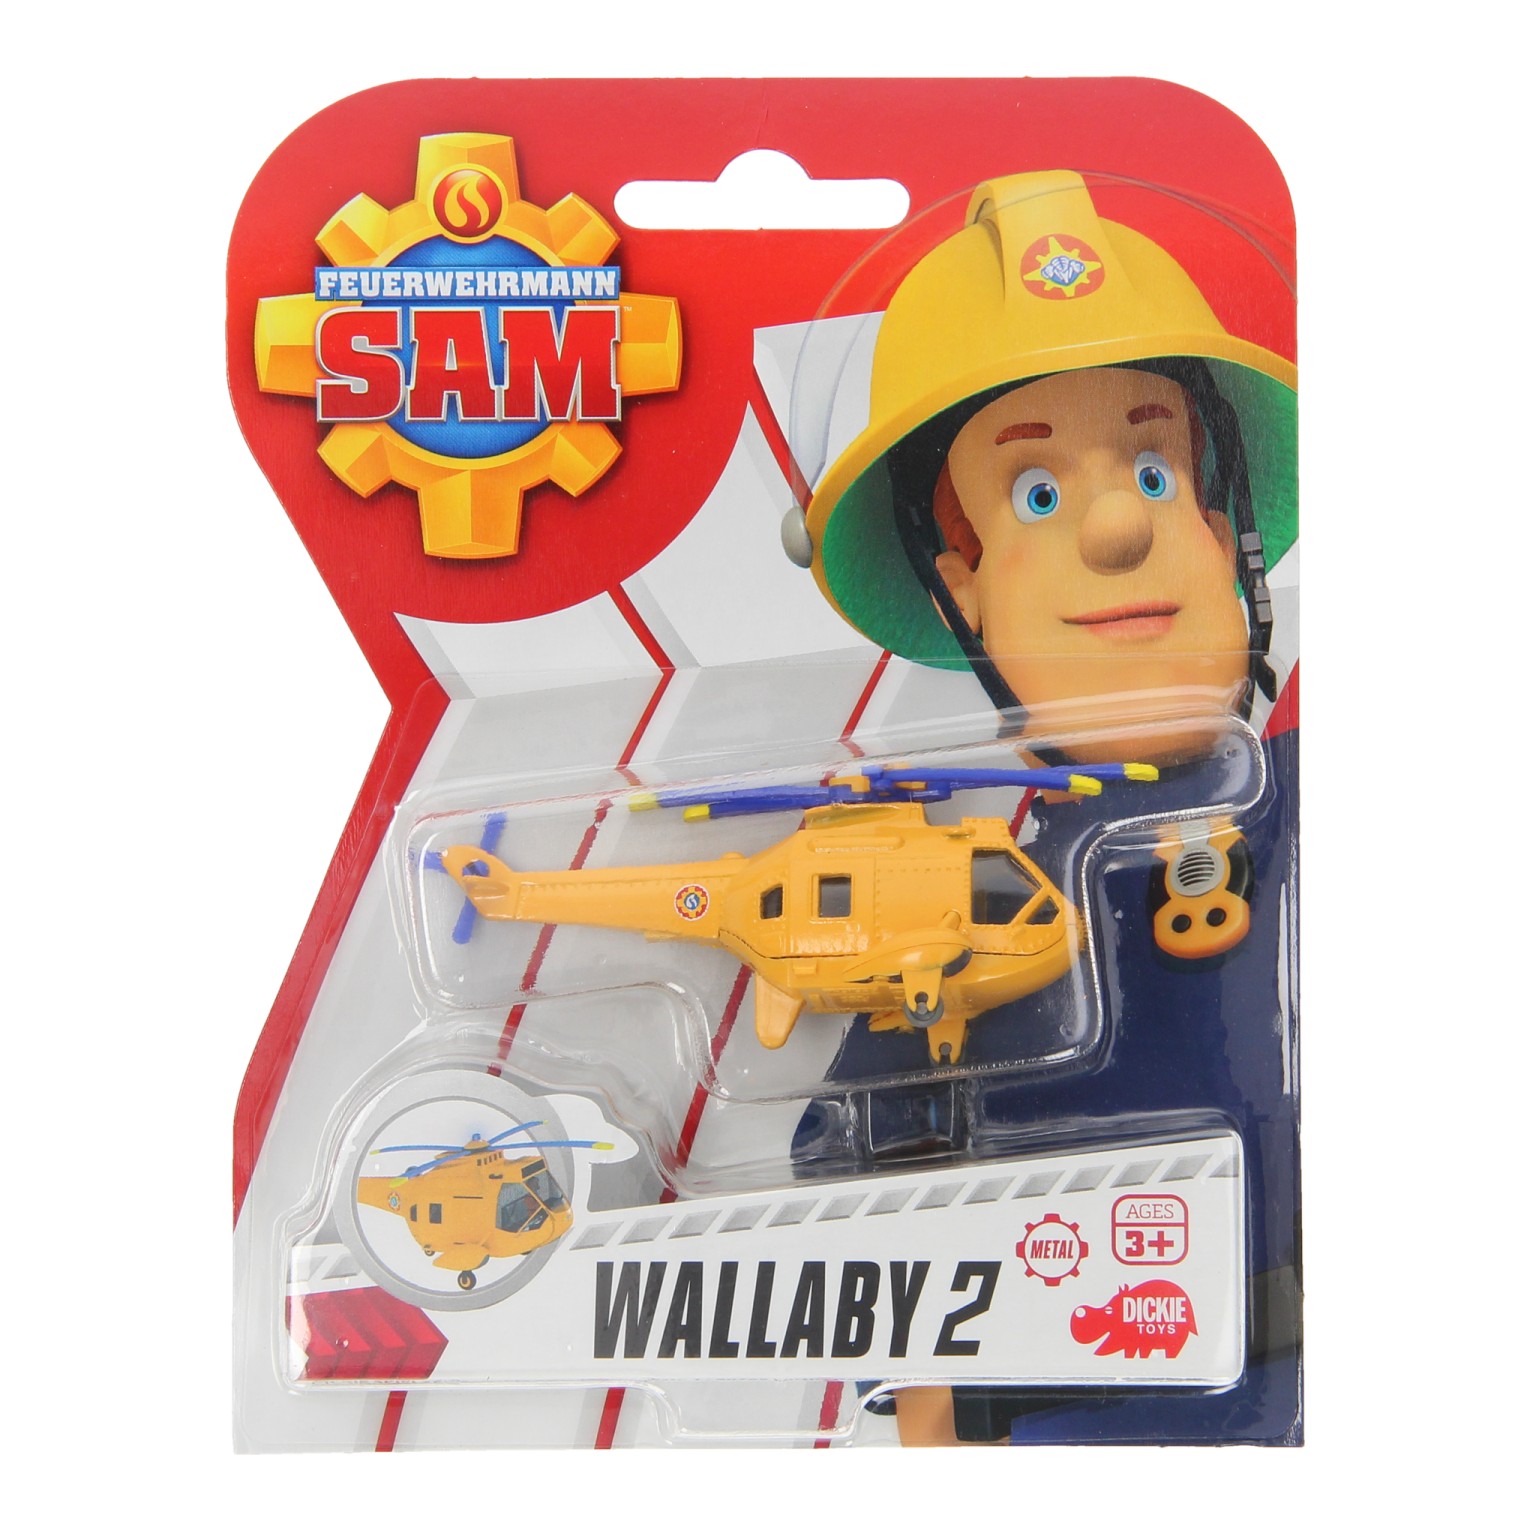 Brandweerman Sam Speelfiguur - Wallaby II